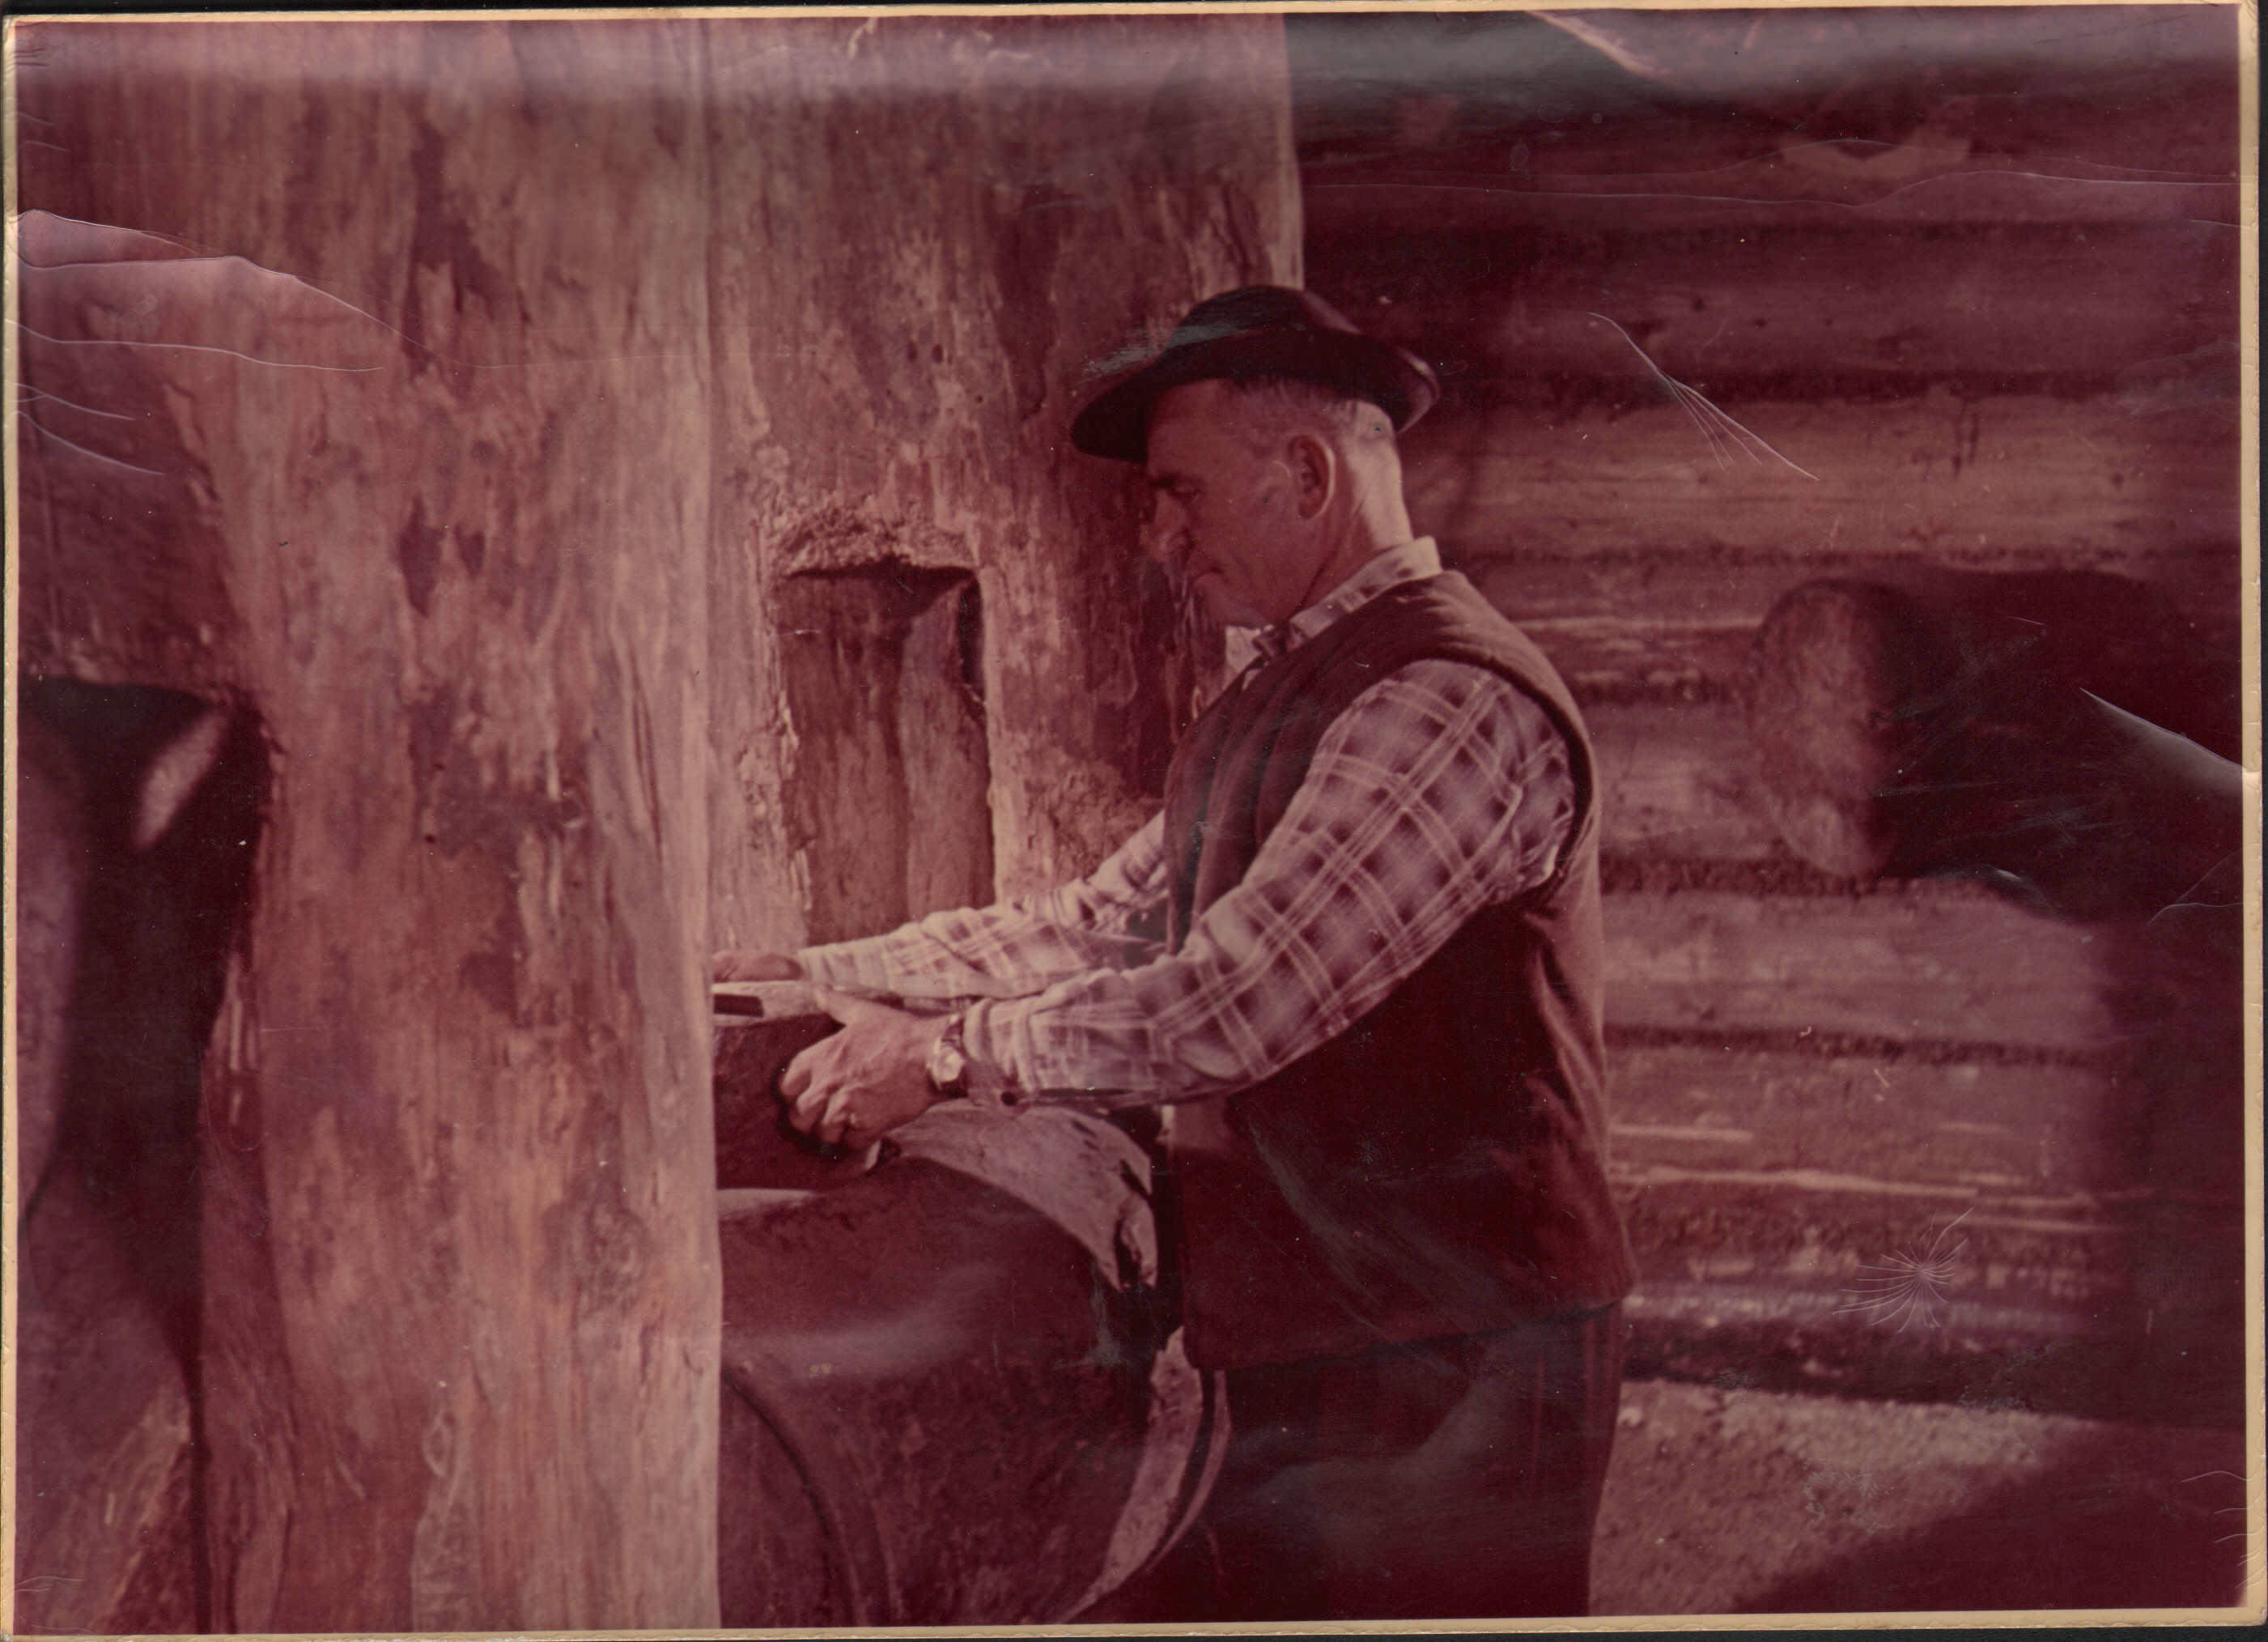 Andrzej Pich ubrany w kapelusz z wąskim rondem, kracistą koszulę i kamizelkę, zajęty pracą przy drewnianym urządzeniu - prasie do tłoczenia oleju lnianego 